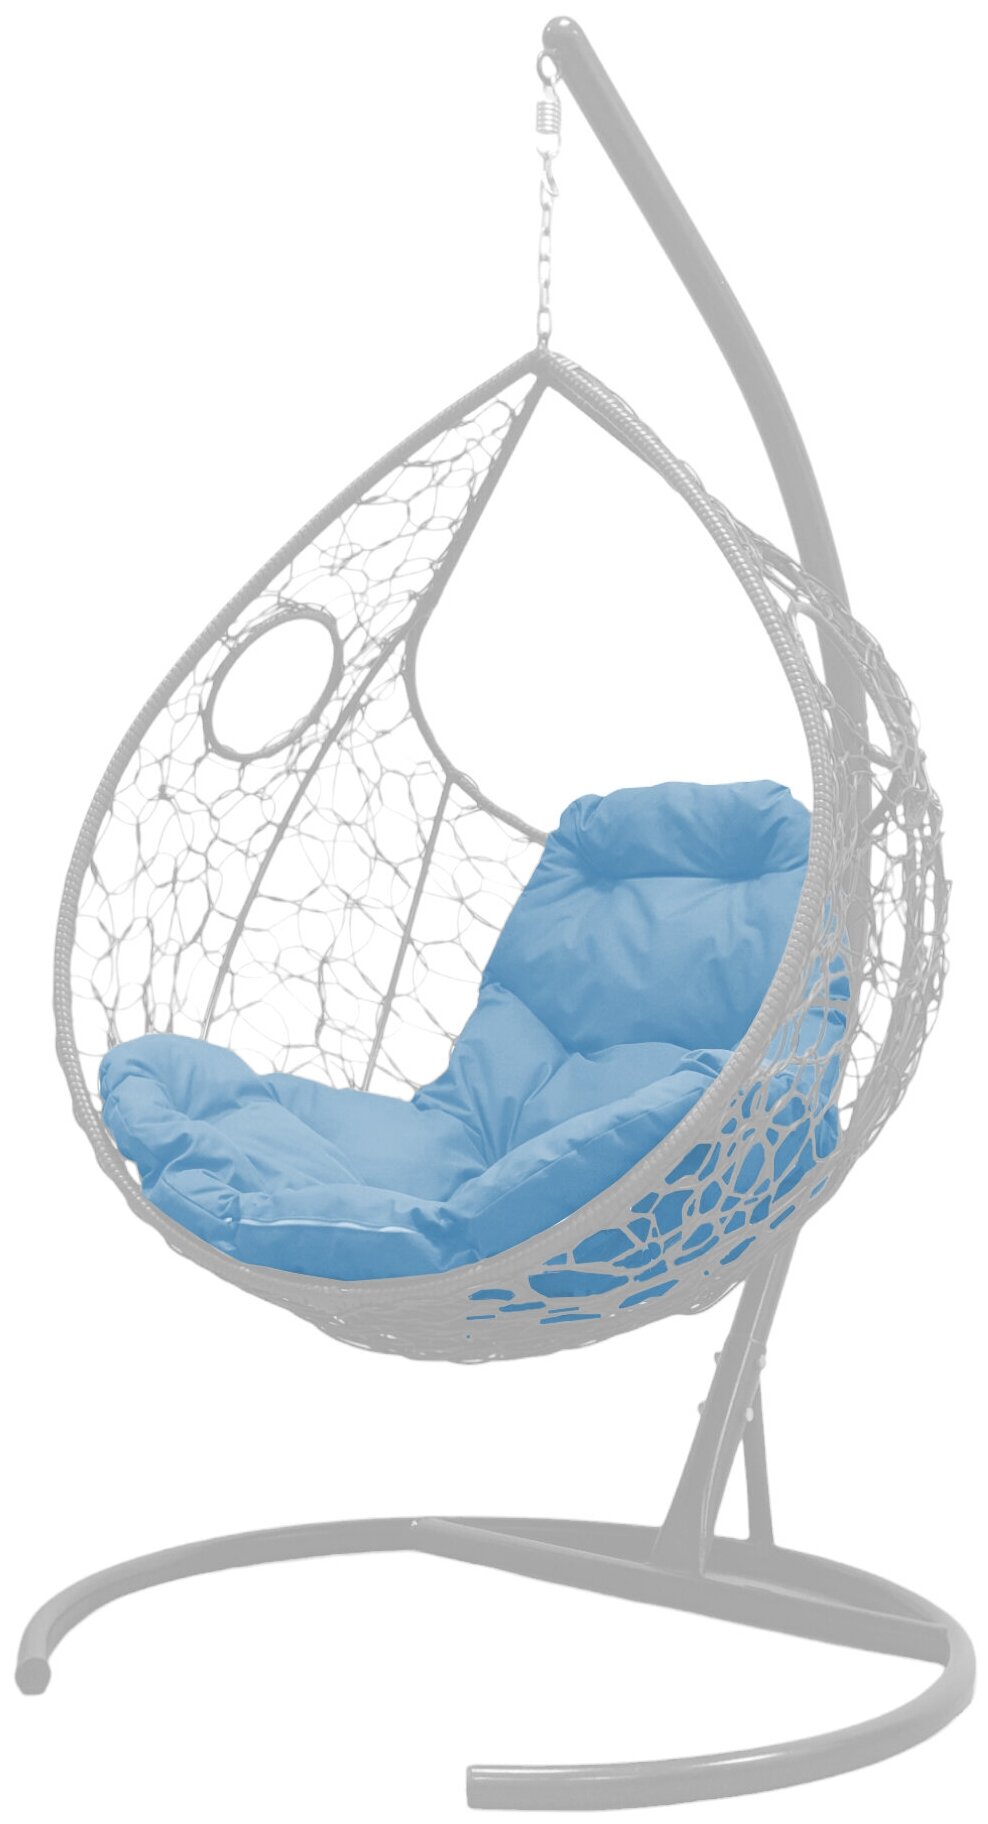 Подвесное кресло M-Group долька ротанг белое, голубая подушка - фотография № 1